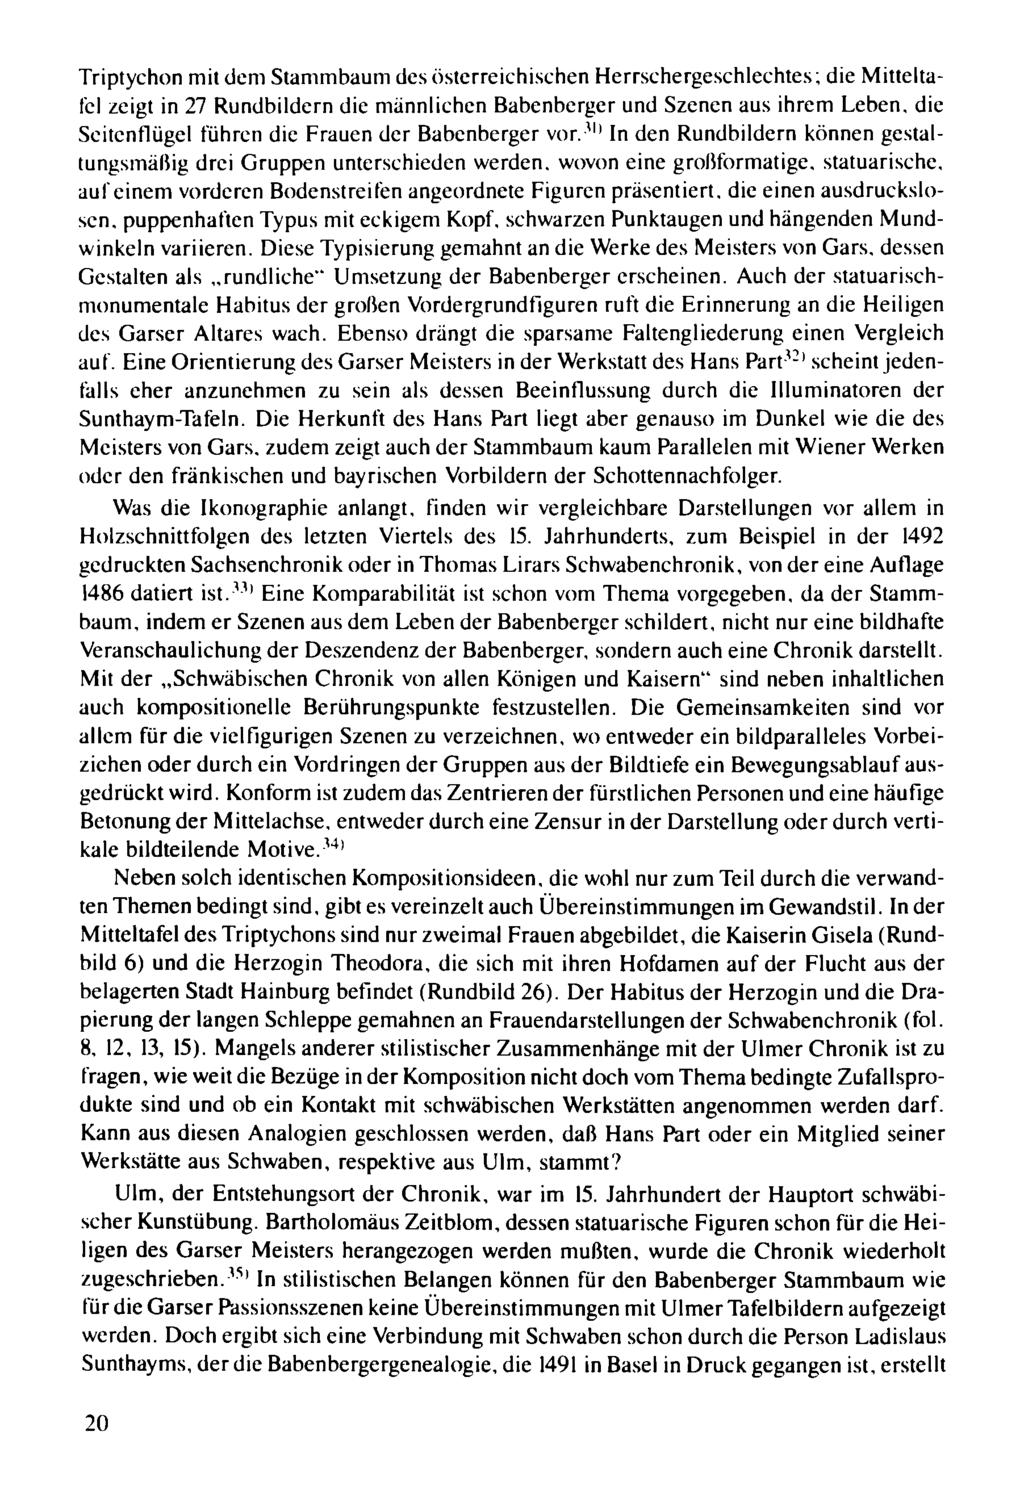 Triptychon mit dem Stammbaum des österreichischen Herrschergeschlechtes; die MitteItalei zeigt in 27 Rundbildern die männlichen Babenberger und Szenen aus ihrem Leben.